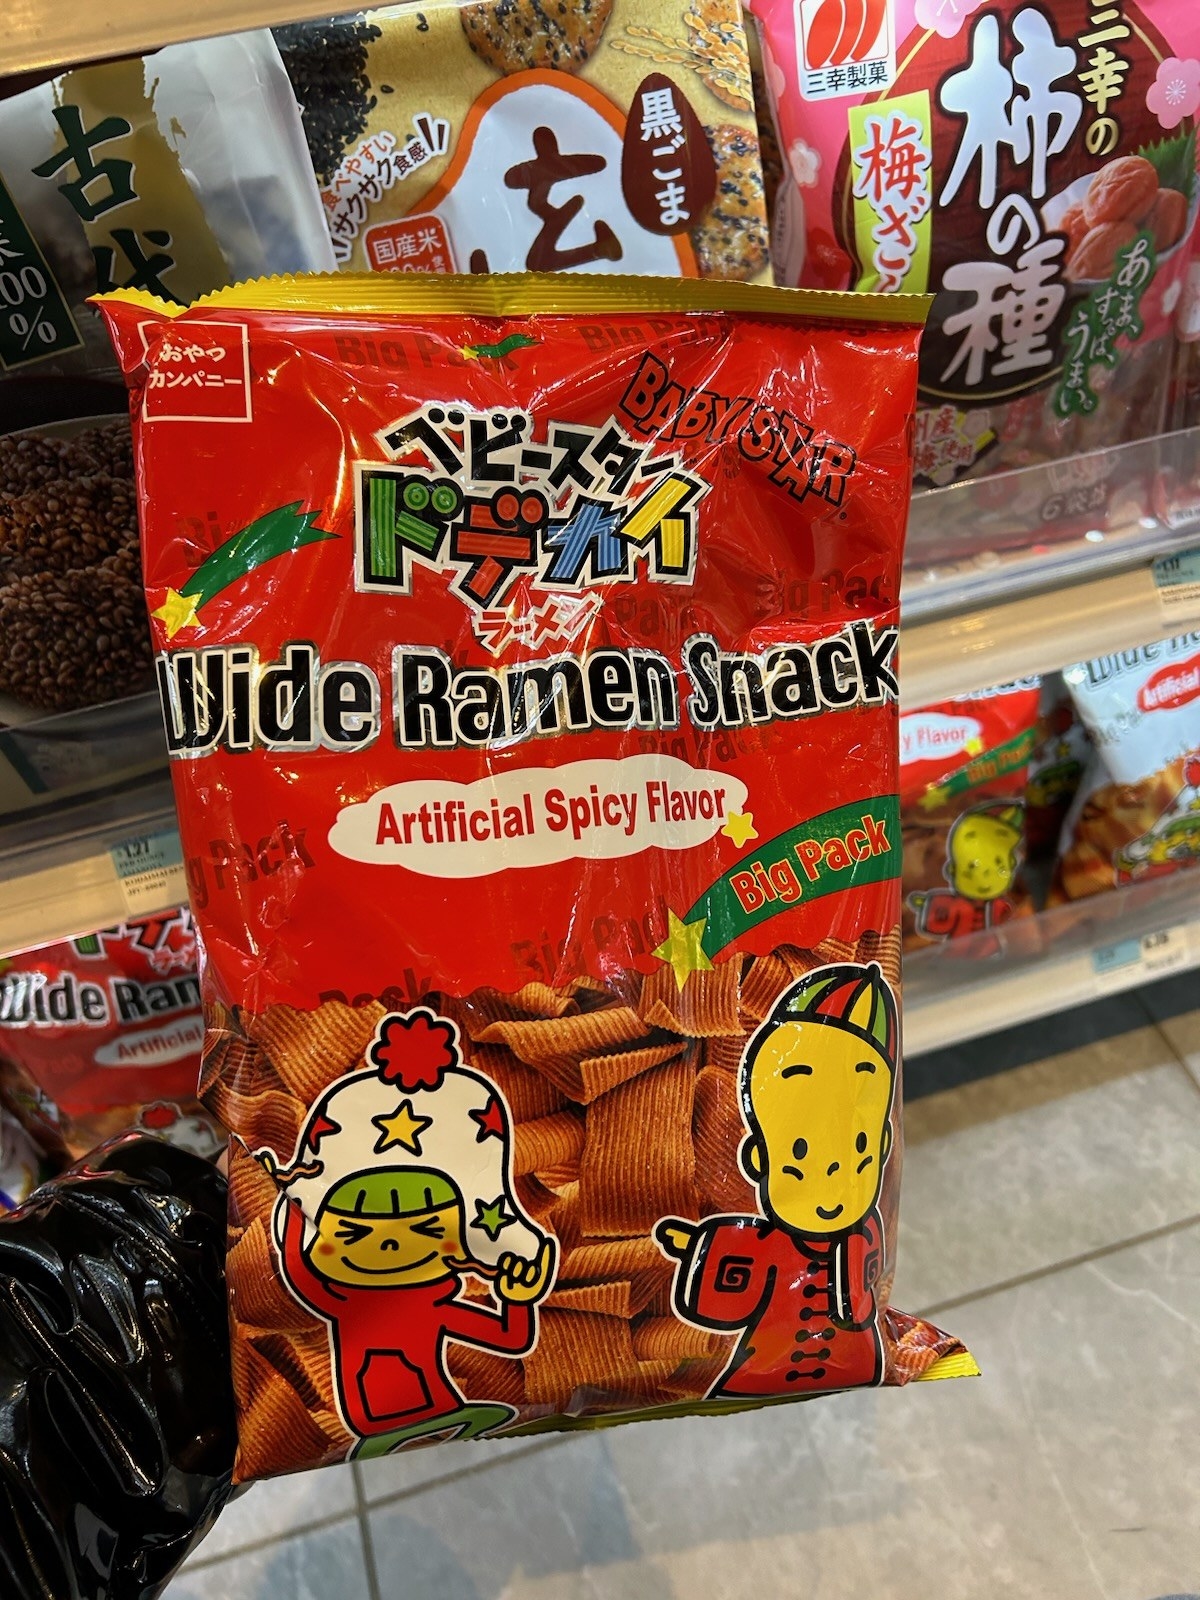 bag of spicy ramen snack